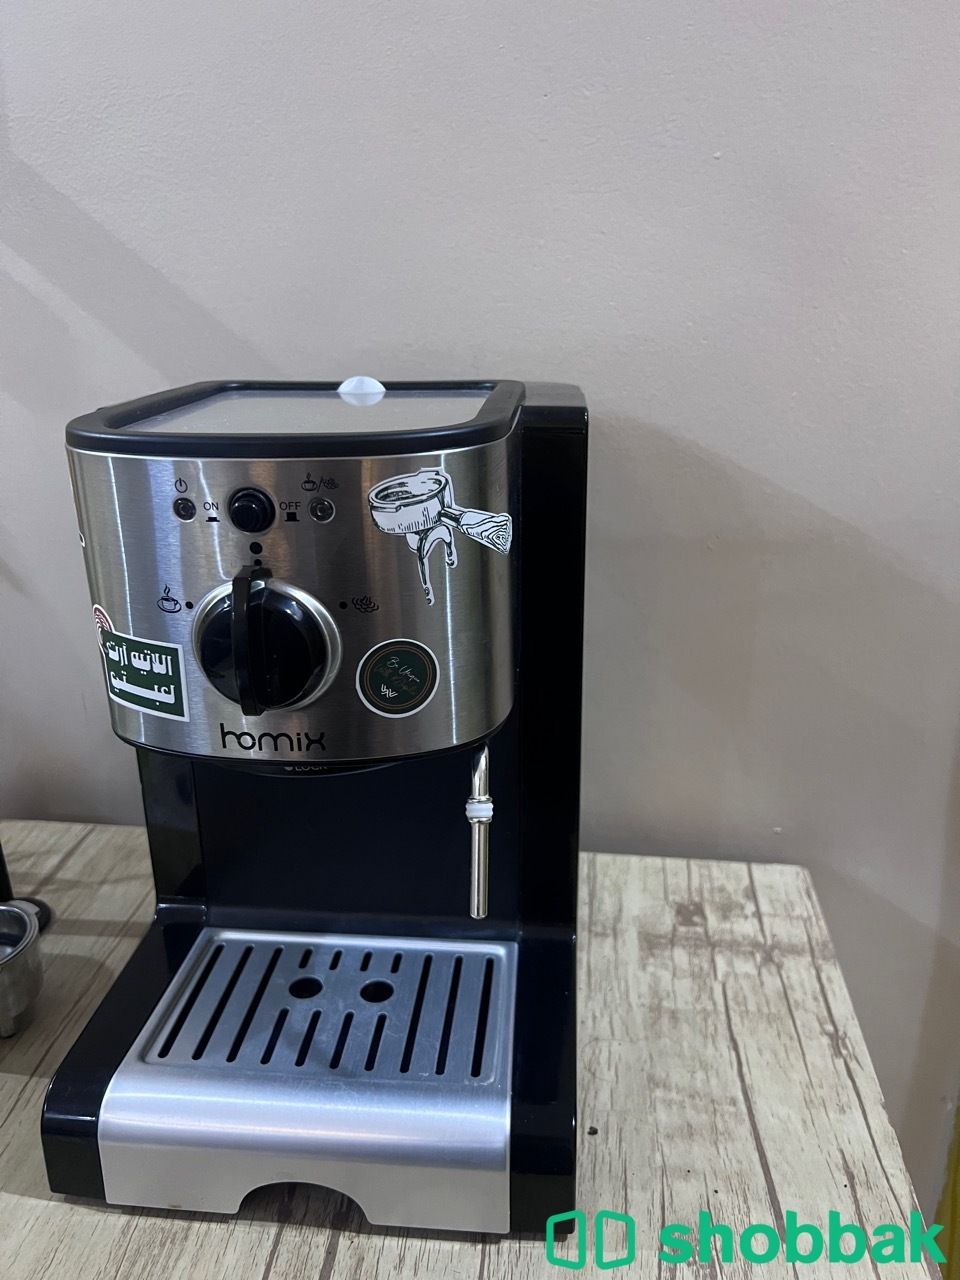 اله هوميكس - ماكينه قهوه - اله قهوه Shobbak Saudi Arabia